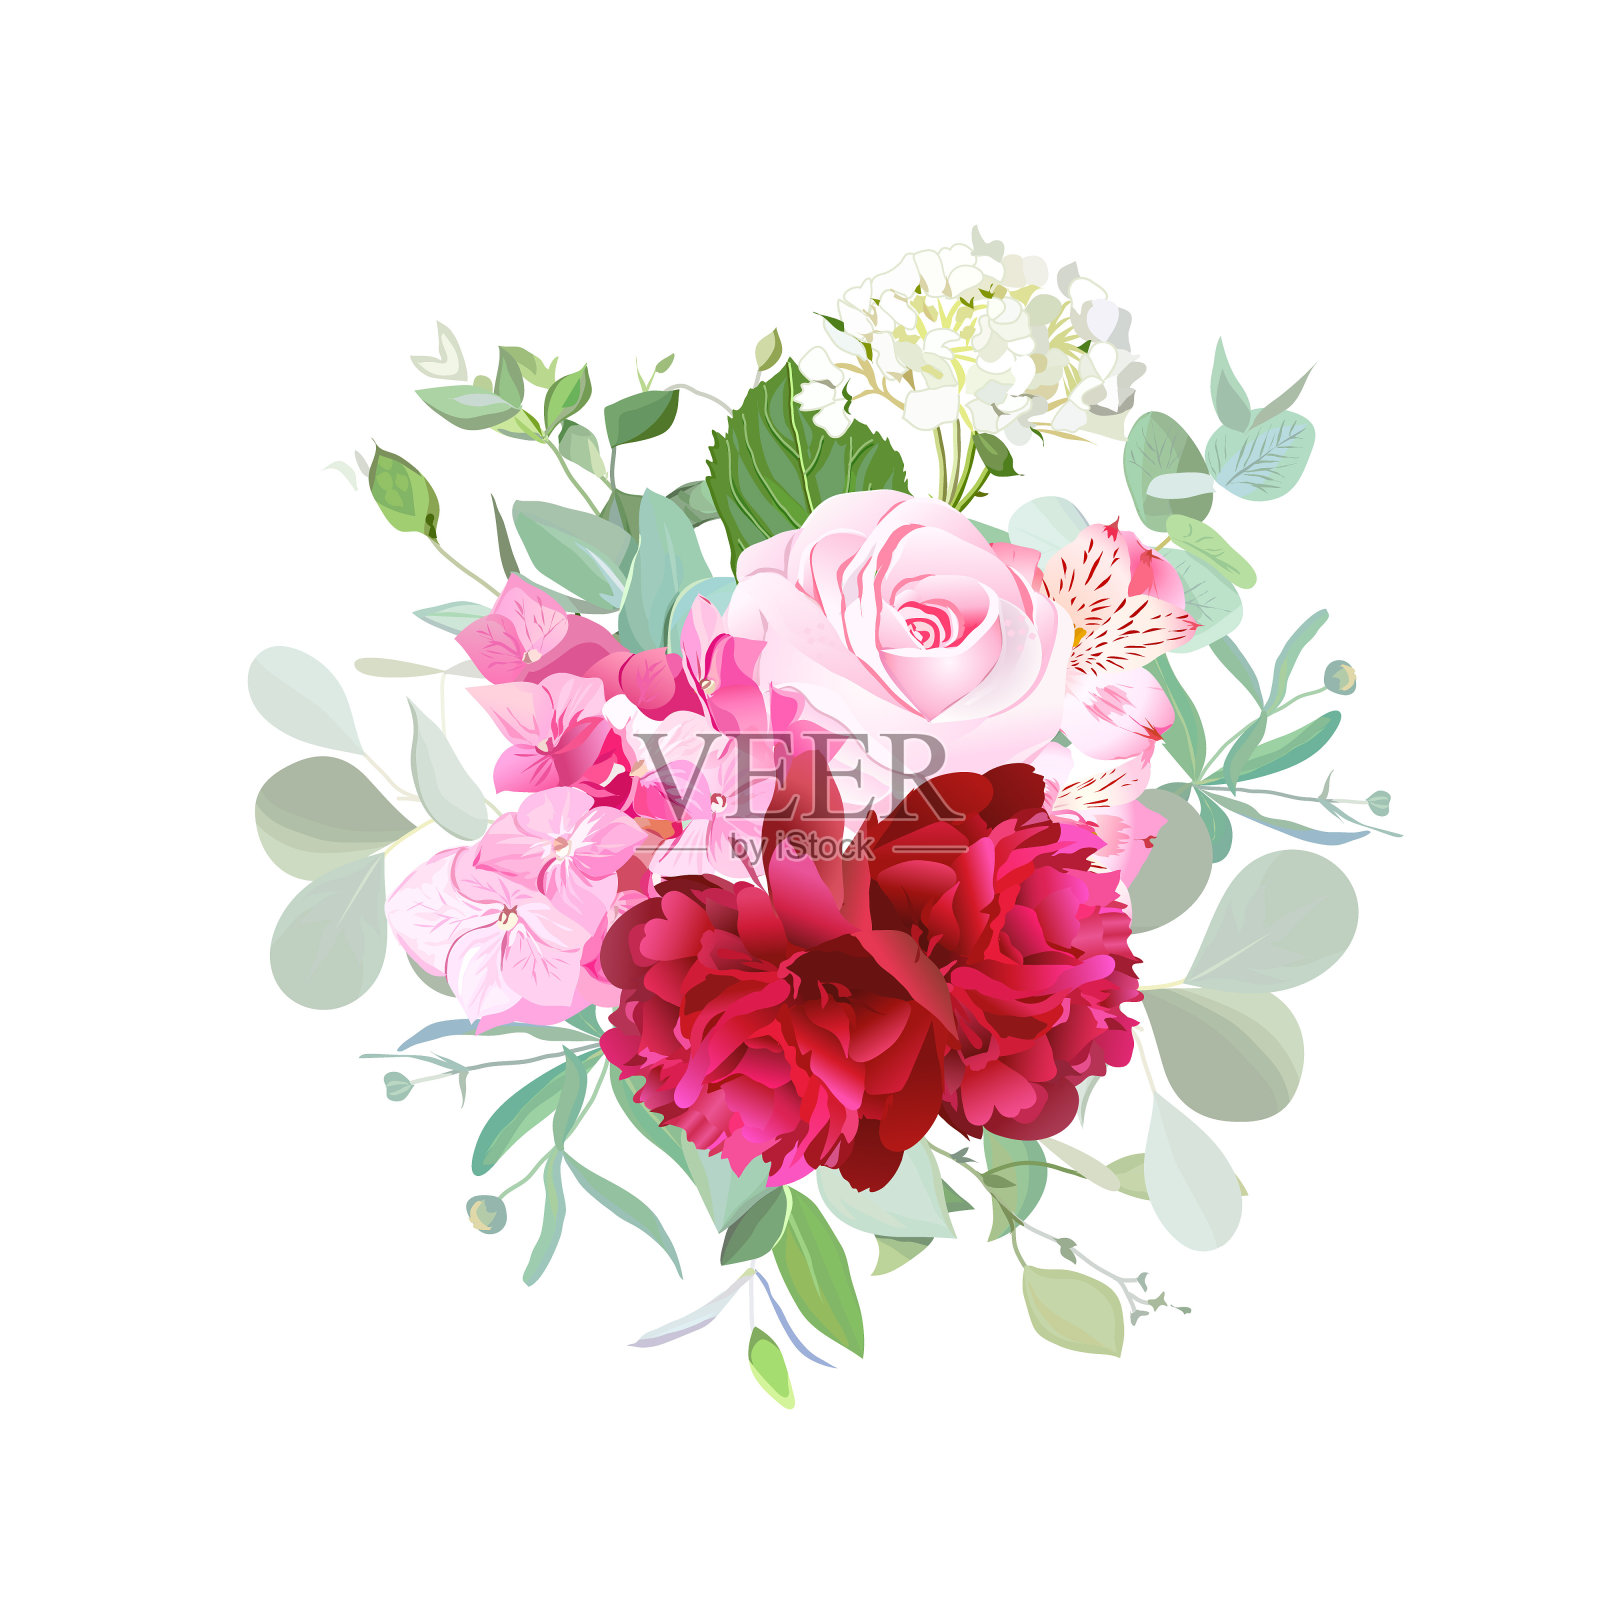 一束玫瑰，紫红色牡丹，粉红色和白色的绣球花插画图片素材